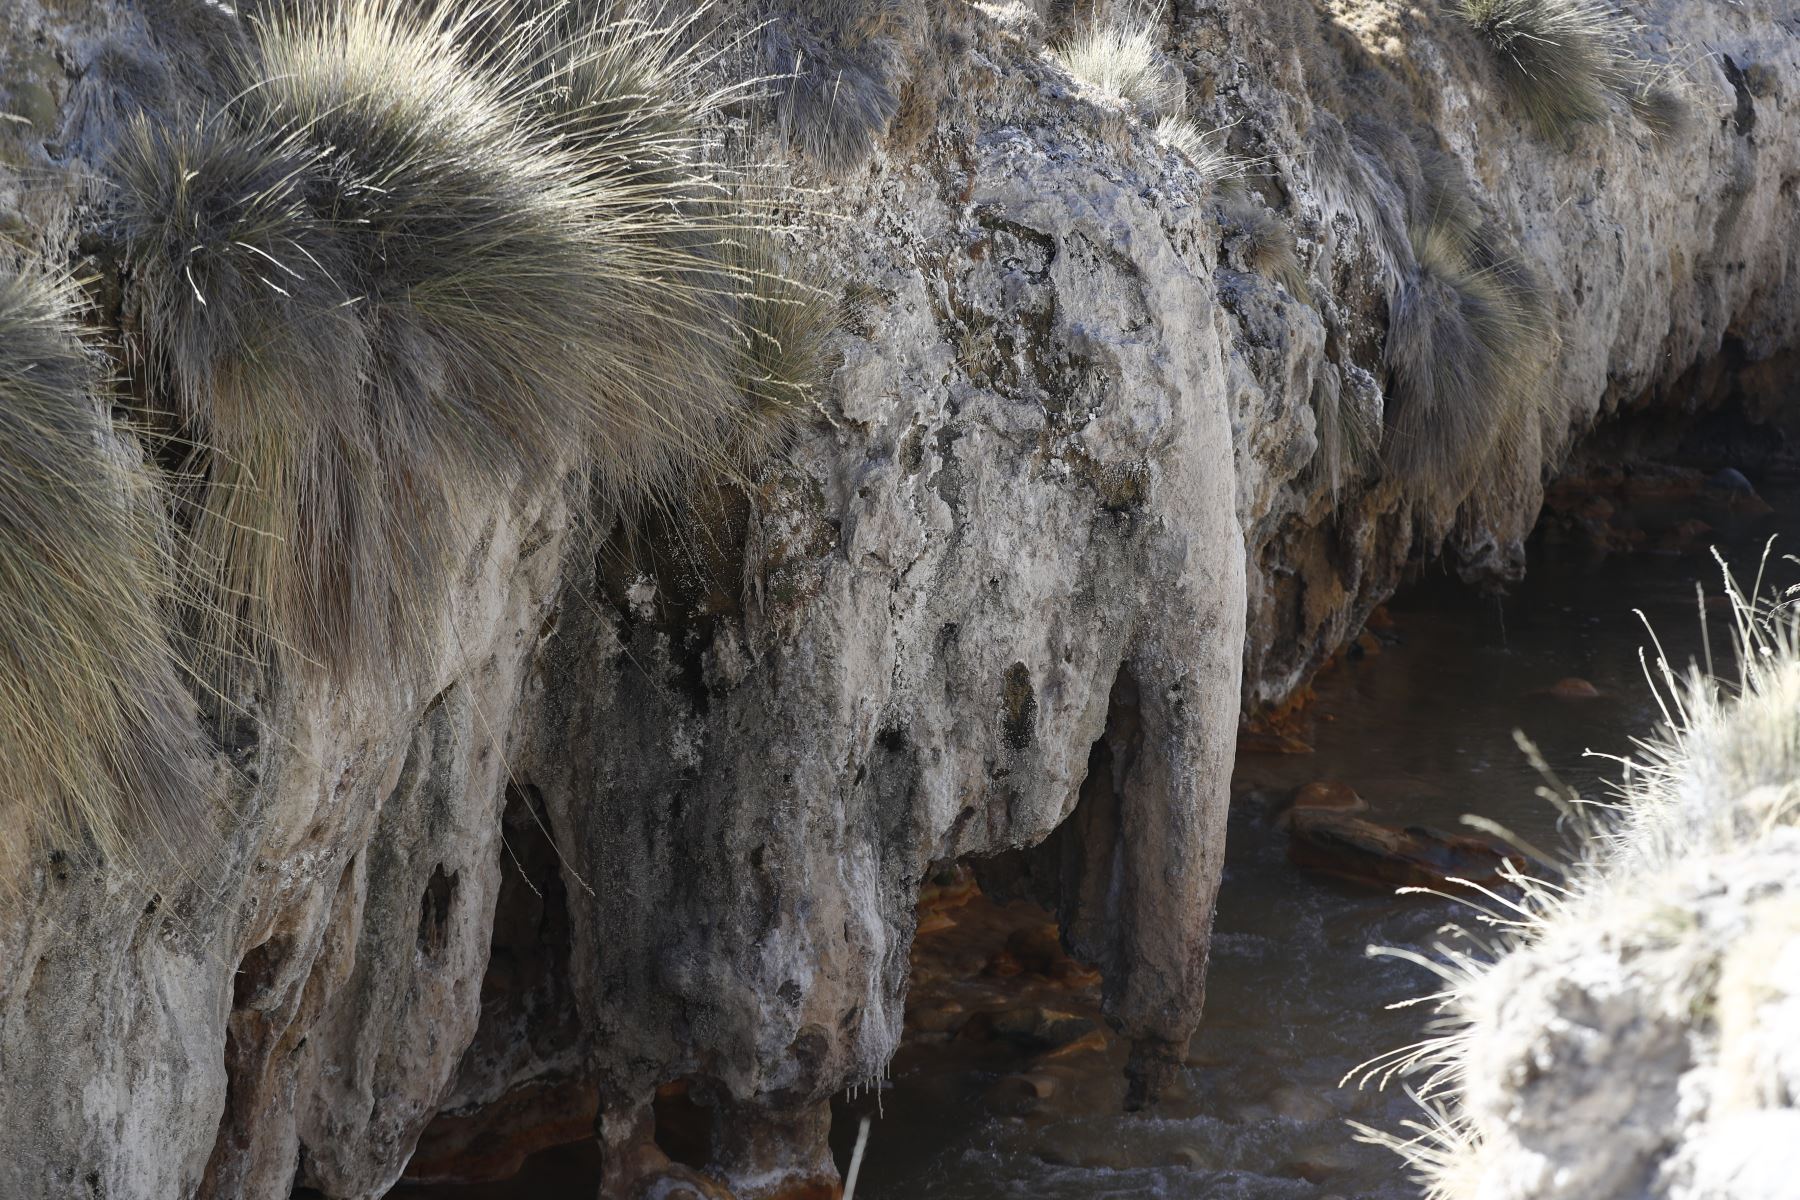 Formación rocosa con forma de cabeza de elefante, ubicada cerca del valle de los géiseres en el Área de Conservación Regional Vilacota Maure de Tacna. Foto: ANDINA/Daniel Bracamonte